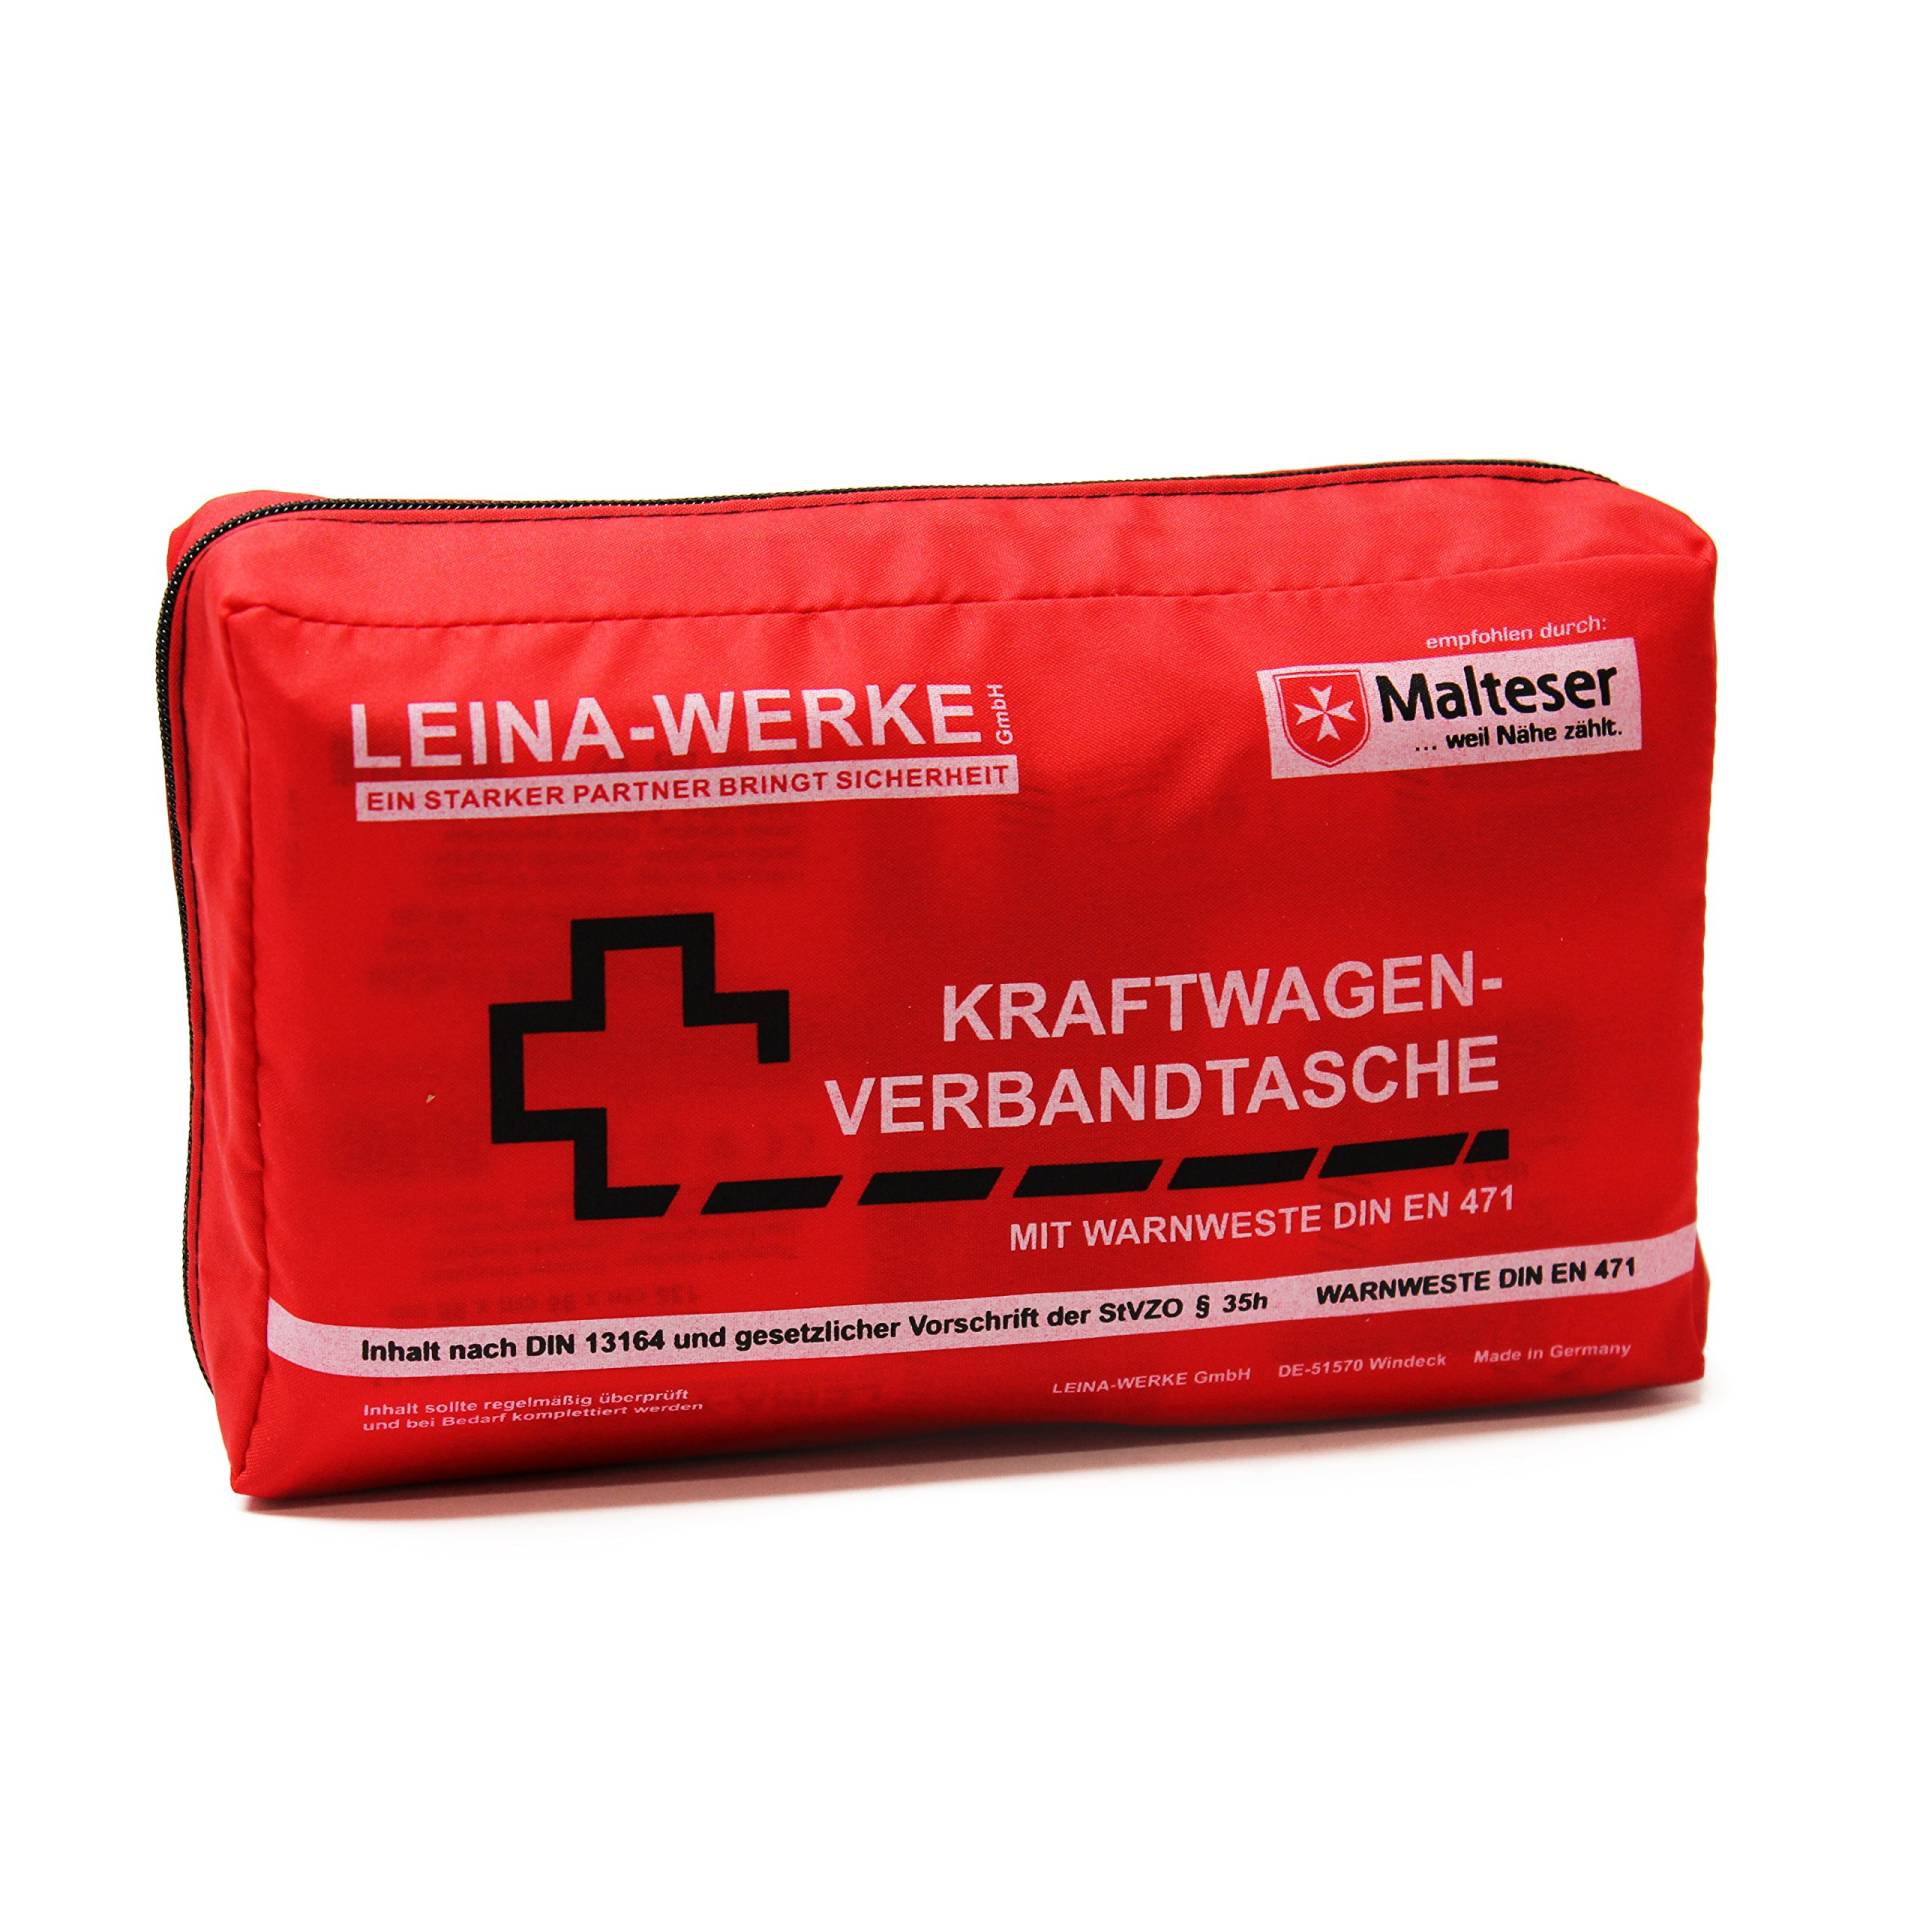 Leina-Werke 11028 KFZ-Verbandtasche Compact mit Warnweste und Klett, Rot/Schwarz/Weiß von Leina-Werke